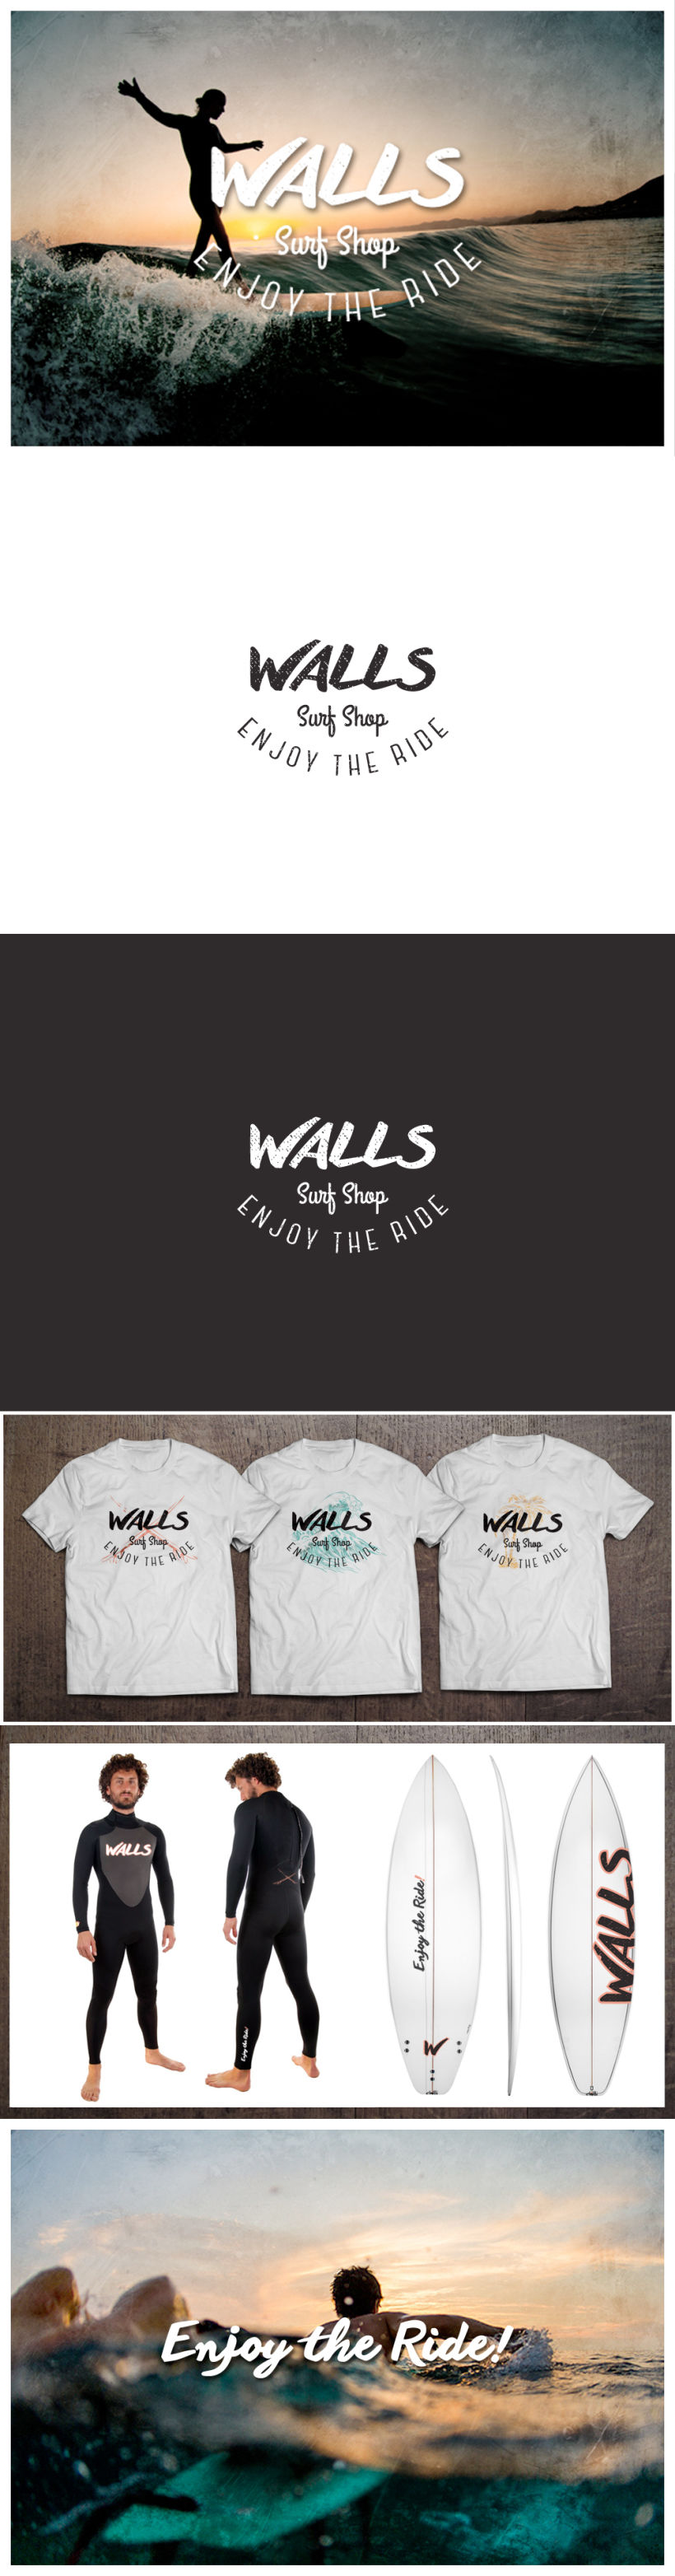 Walls Surf Shop -1